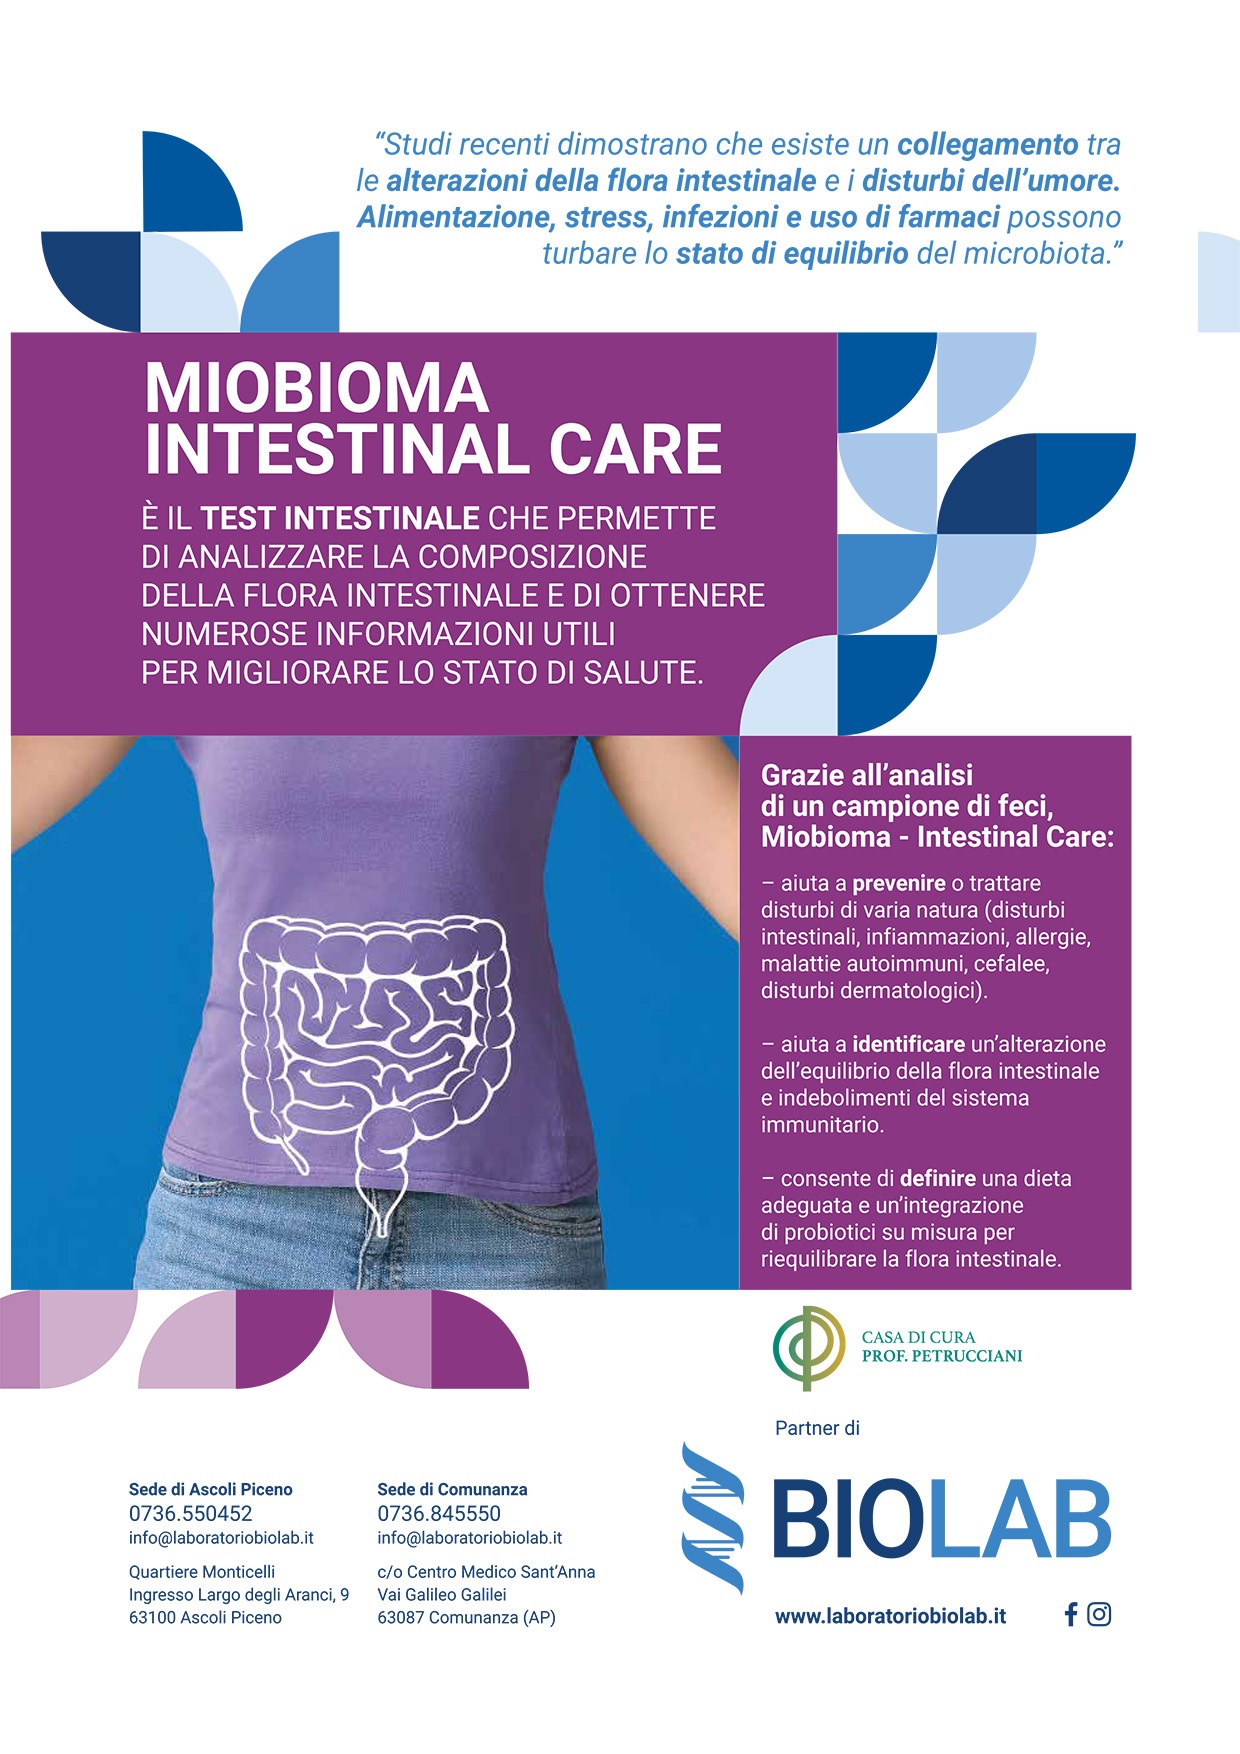 Miobioma - Intestinal Care